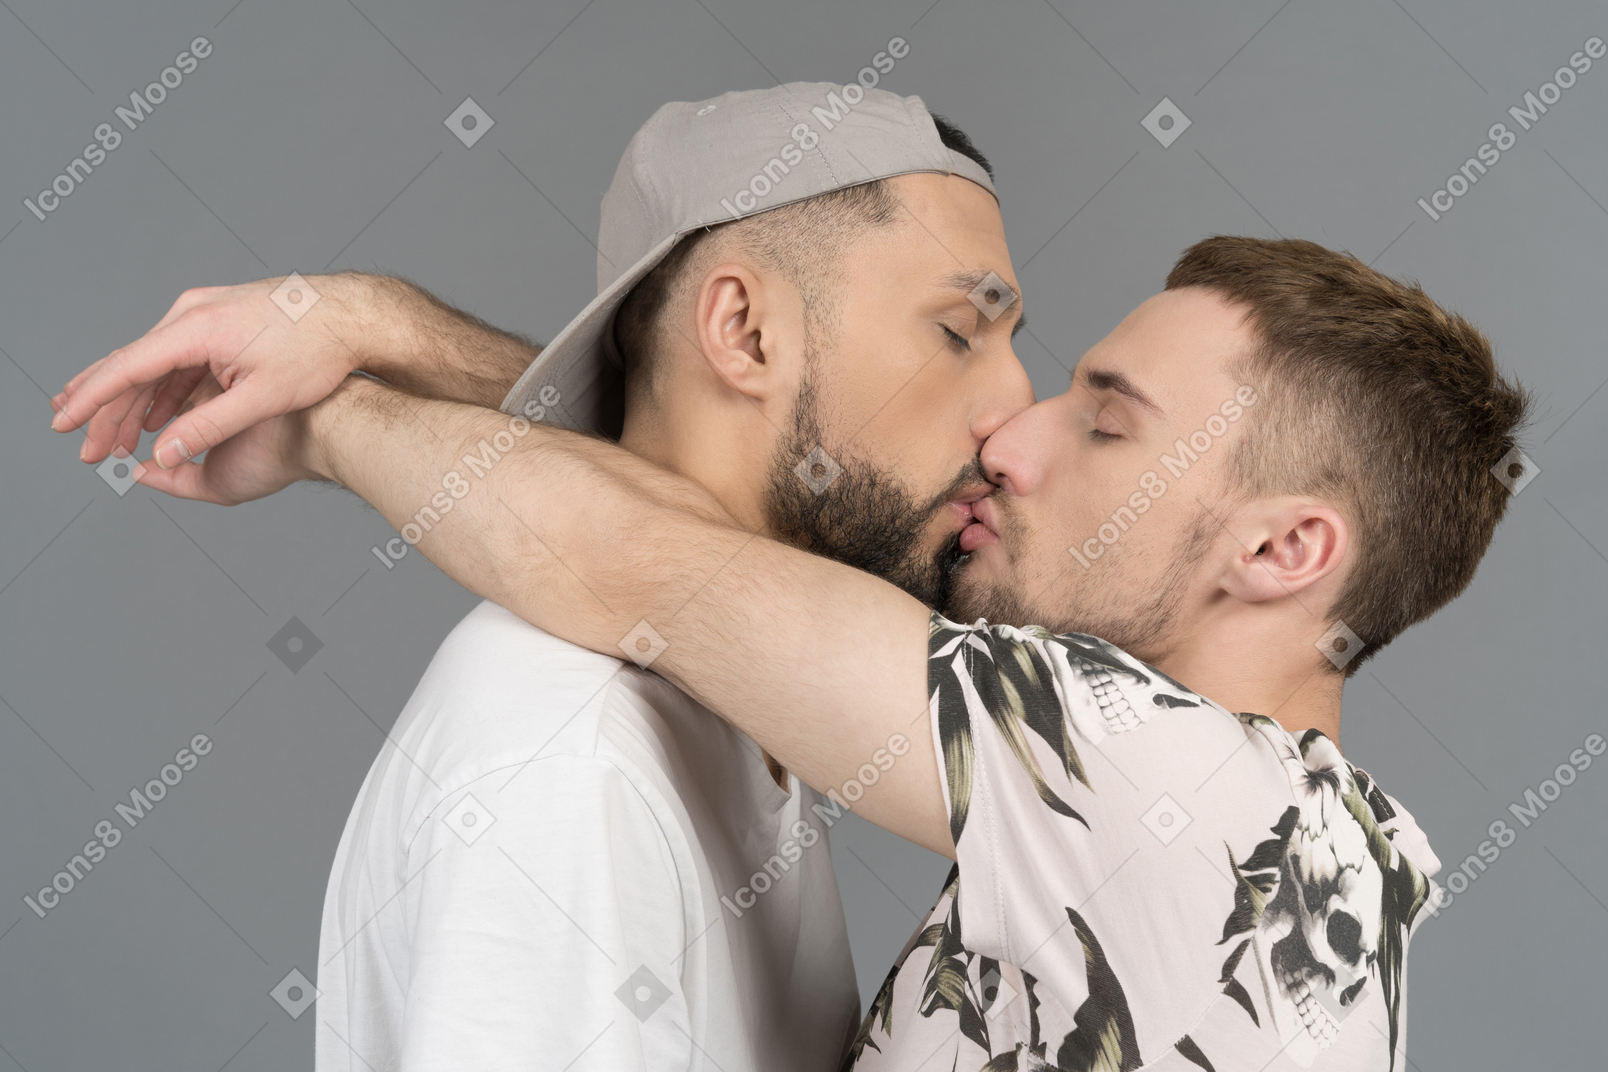 Стоковые видео по запросу Men kissing